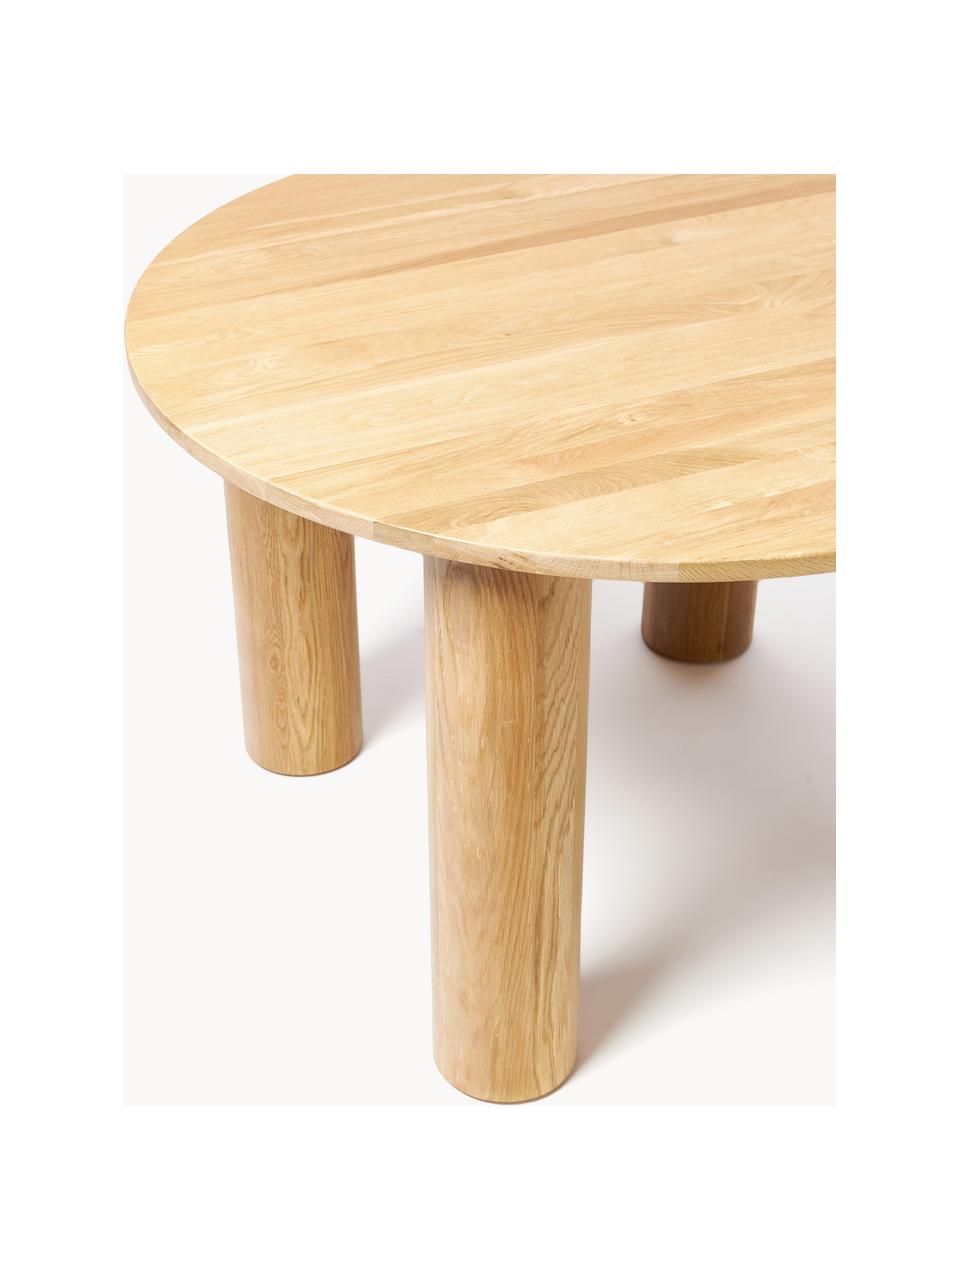 Table ronde en chêne Ohana, Ø 120 cm, Bois de chêne, huilé, certifié FSC

Ce produit est fabriqué à partir de bois certifié FSC® issu d'une exploitation durable, Chêne clair huilé, Ø 120 cm